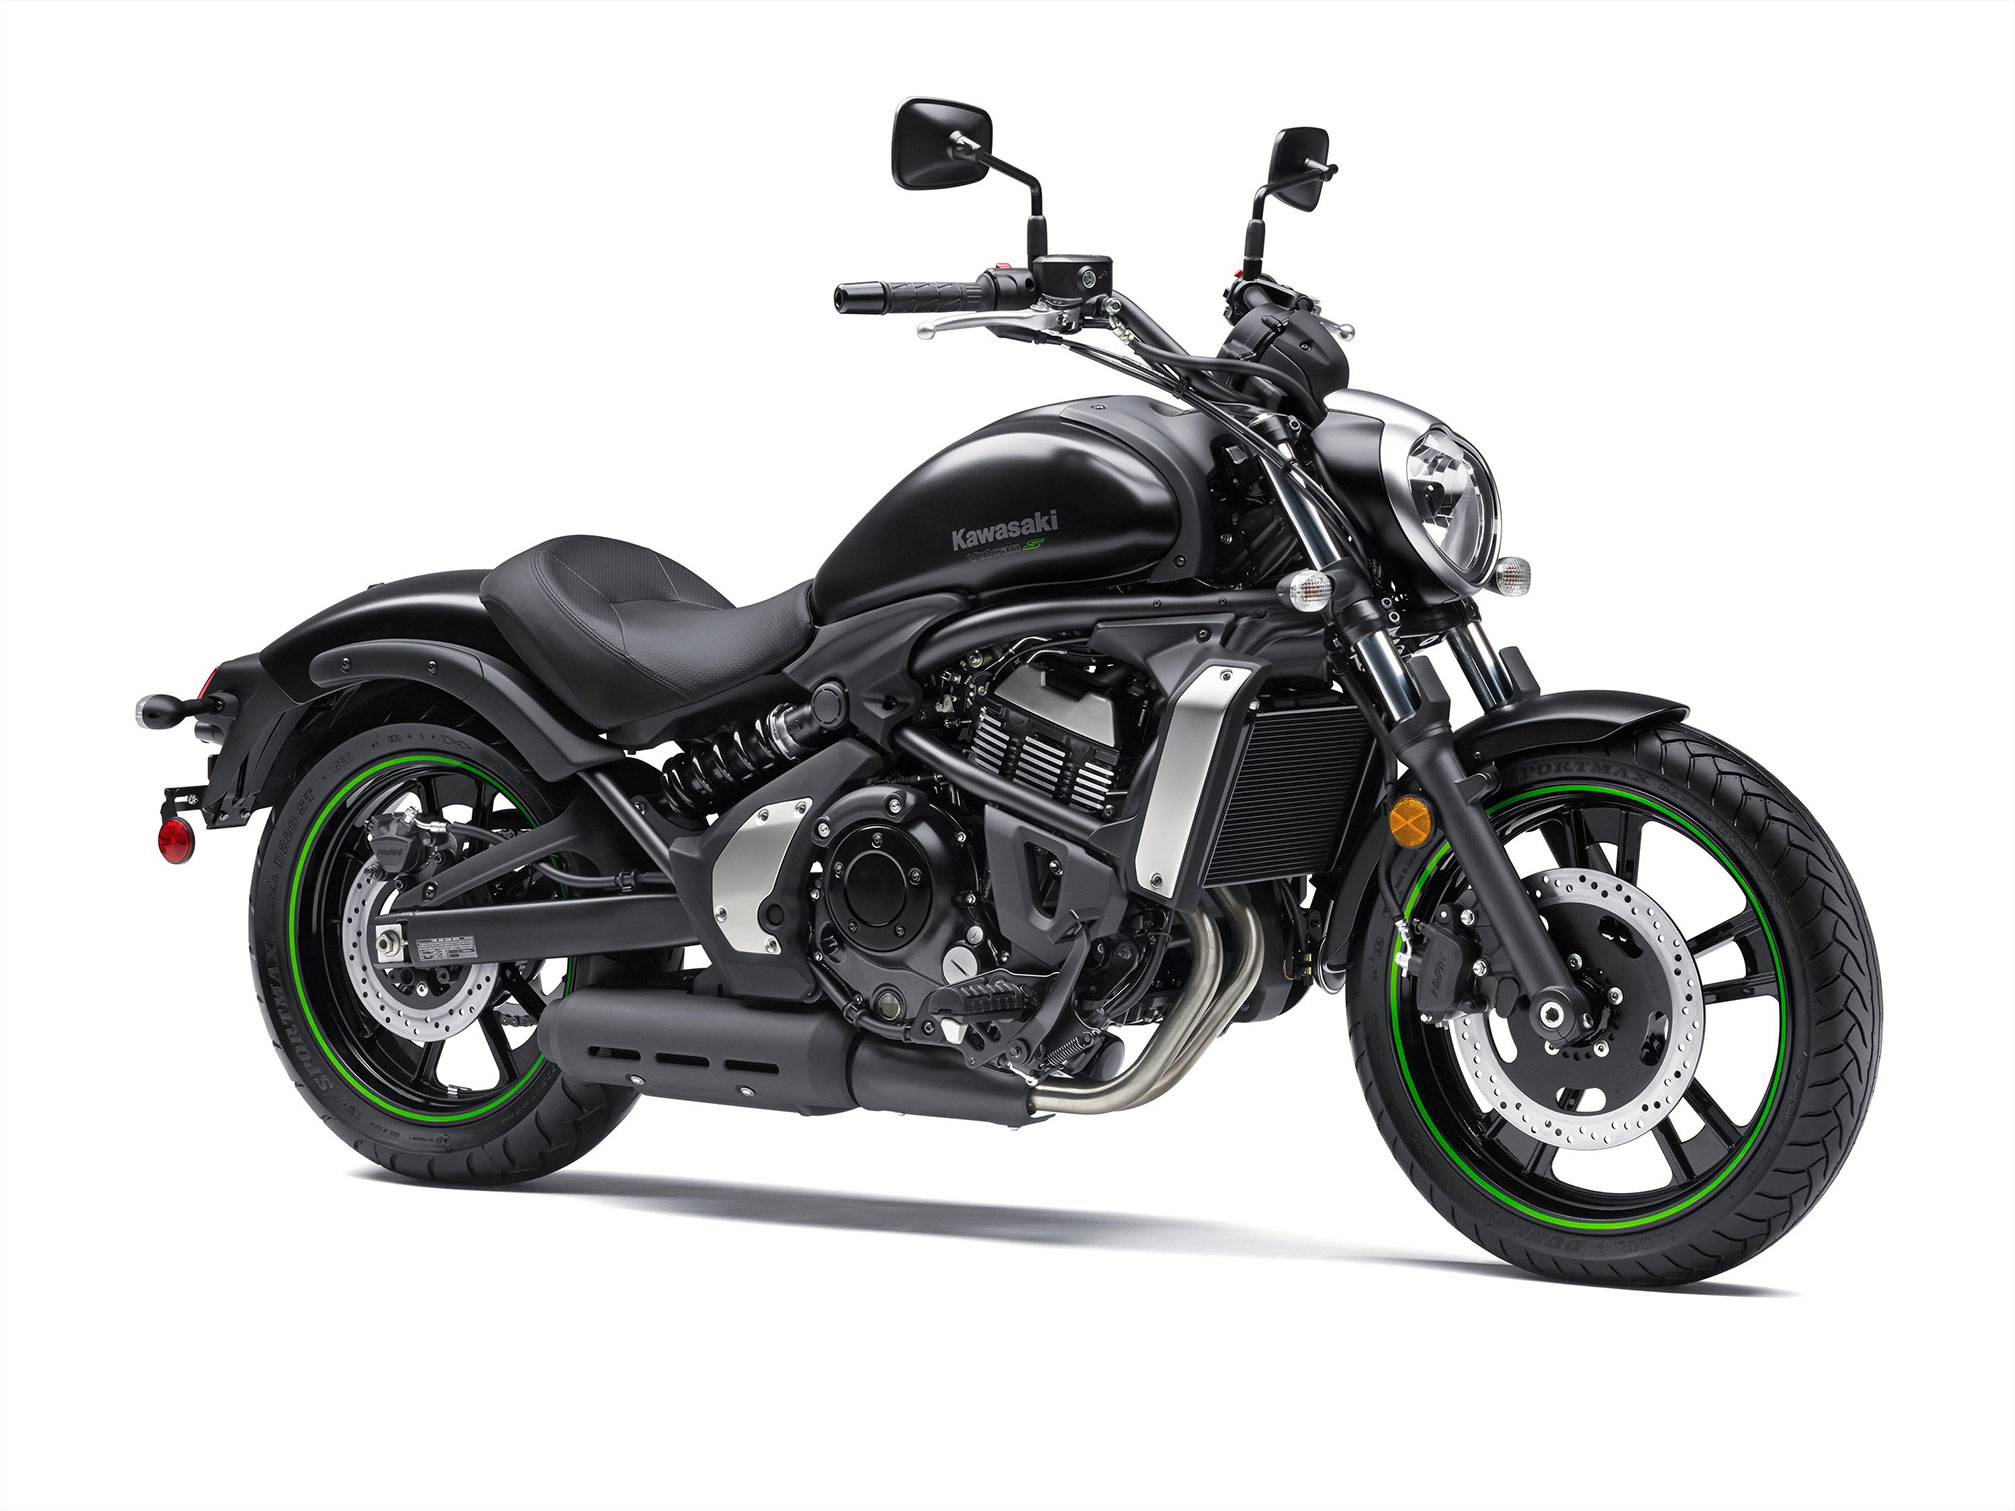 2015 Kawasaki Vulcan S review, Motorcycle expert, Vulcan S, Motorcycle review, 2020x1520 HD Desktop